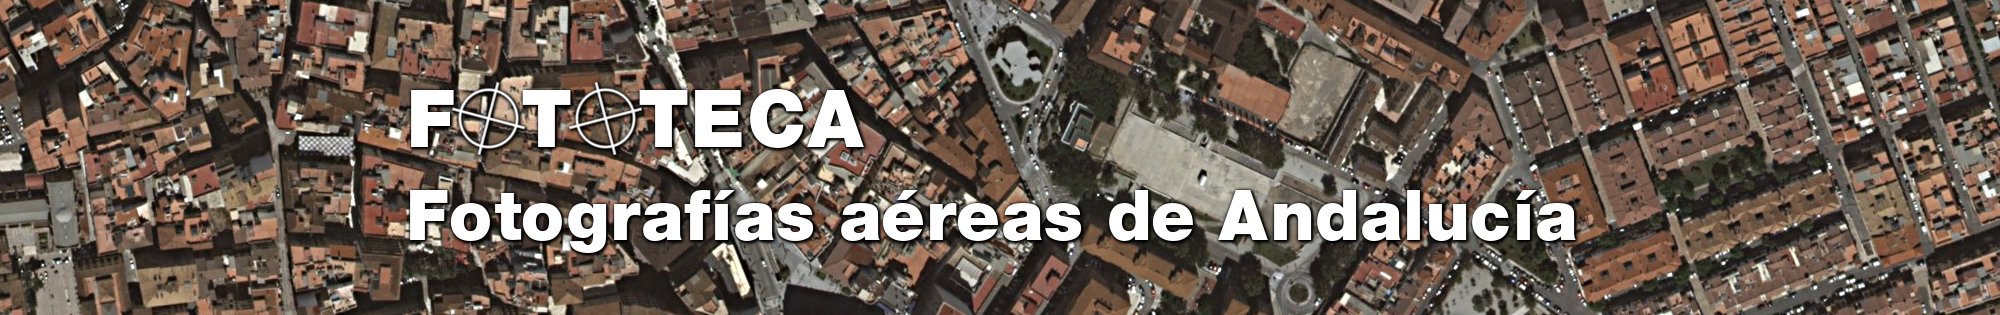 Fototeca. Fotografías aéreas de Andalucía